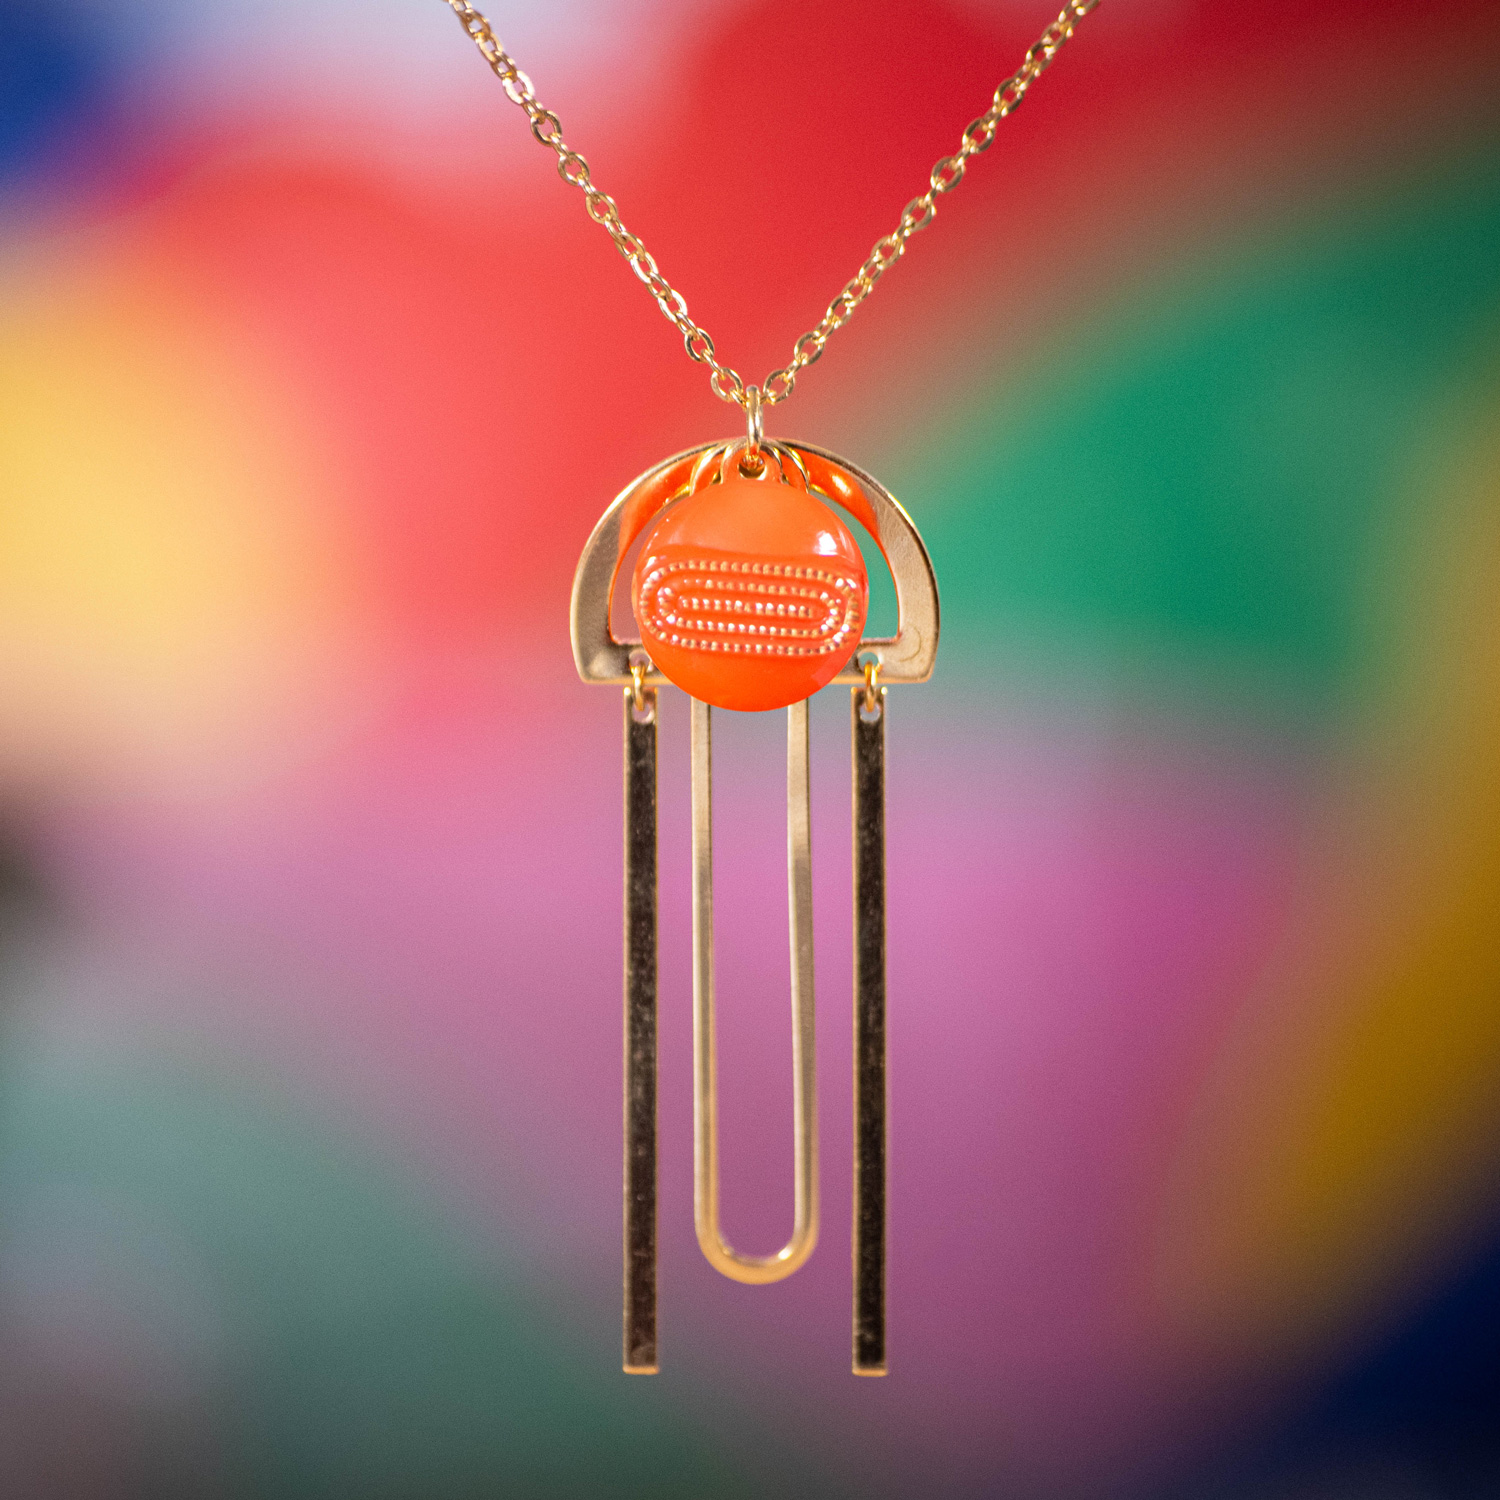 Assuna Medusa Pelagia collier Georgette orange – bijou vintage bouton ancien rétro collier ajouré collier léger bijou unique